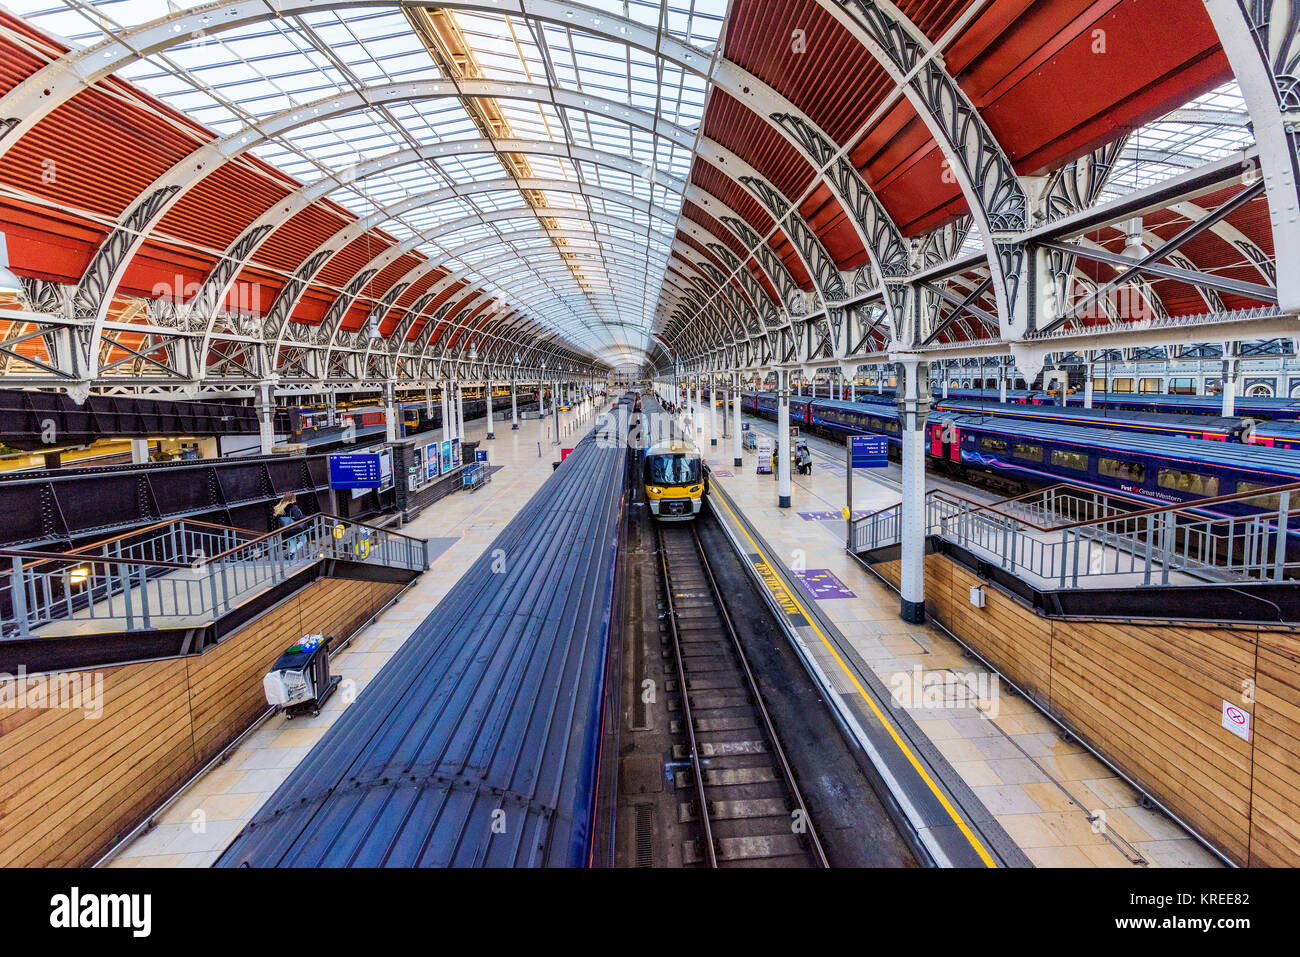 LONDON, GROSSBRITANNIEN, 31. Oktober: Innenansicht der Paddington Station, einem der wichtigsten Verkehrsknotenpunkte in London am 31. Oktober 2017 in London. Stockfoto